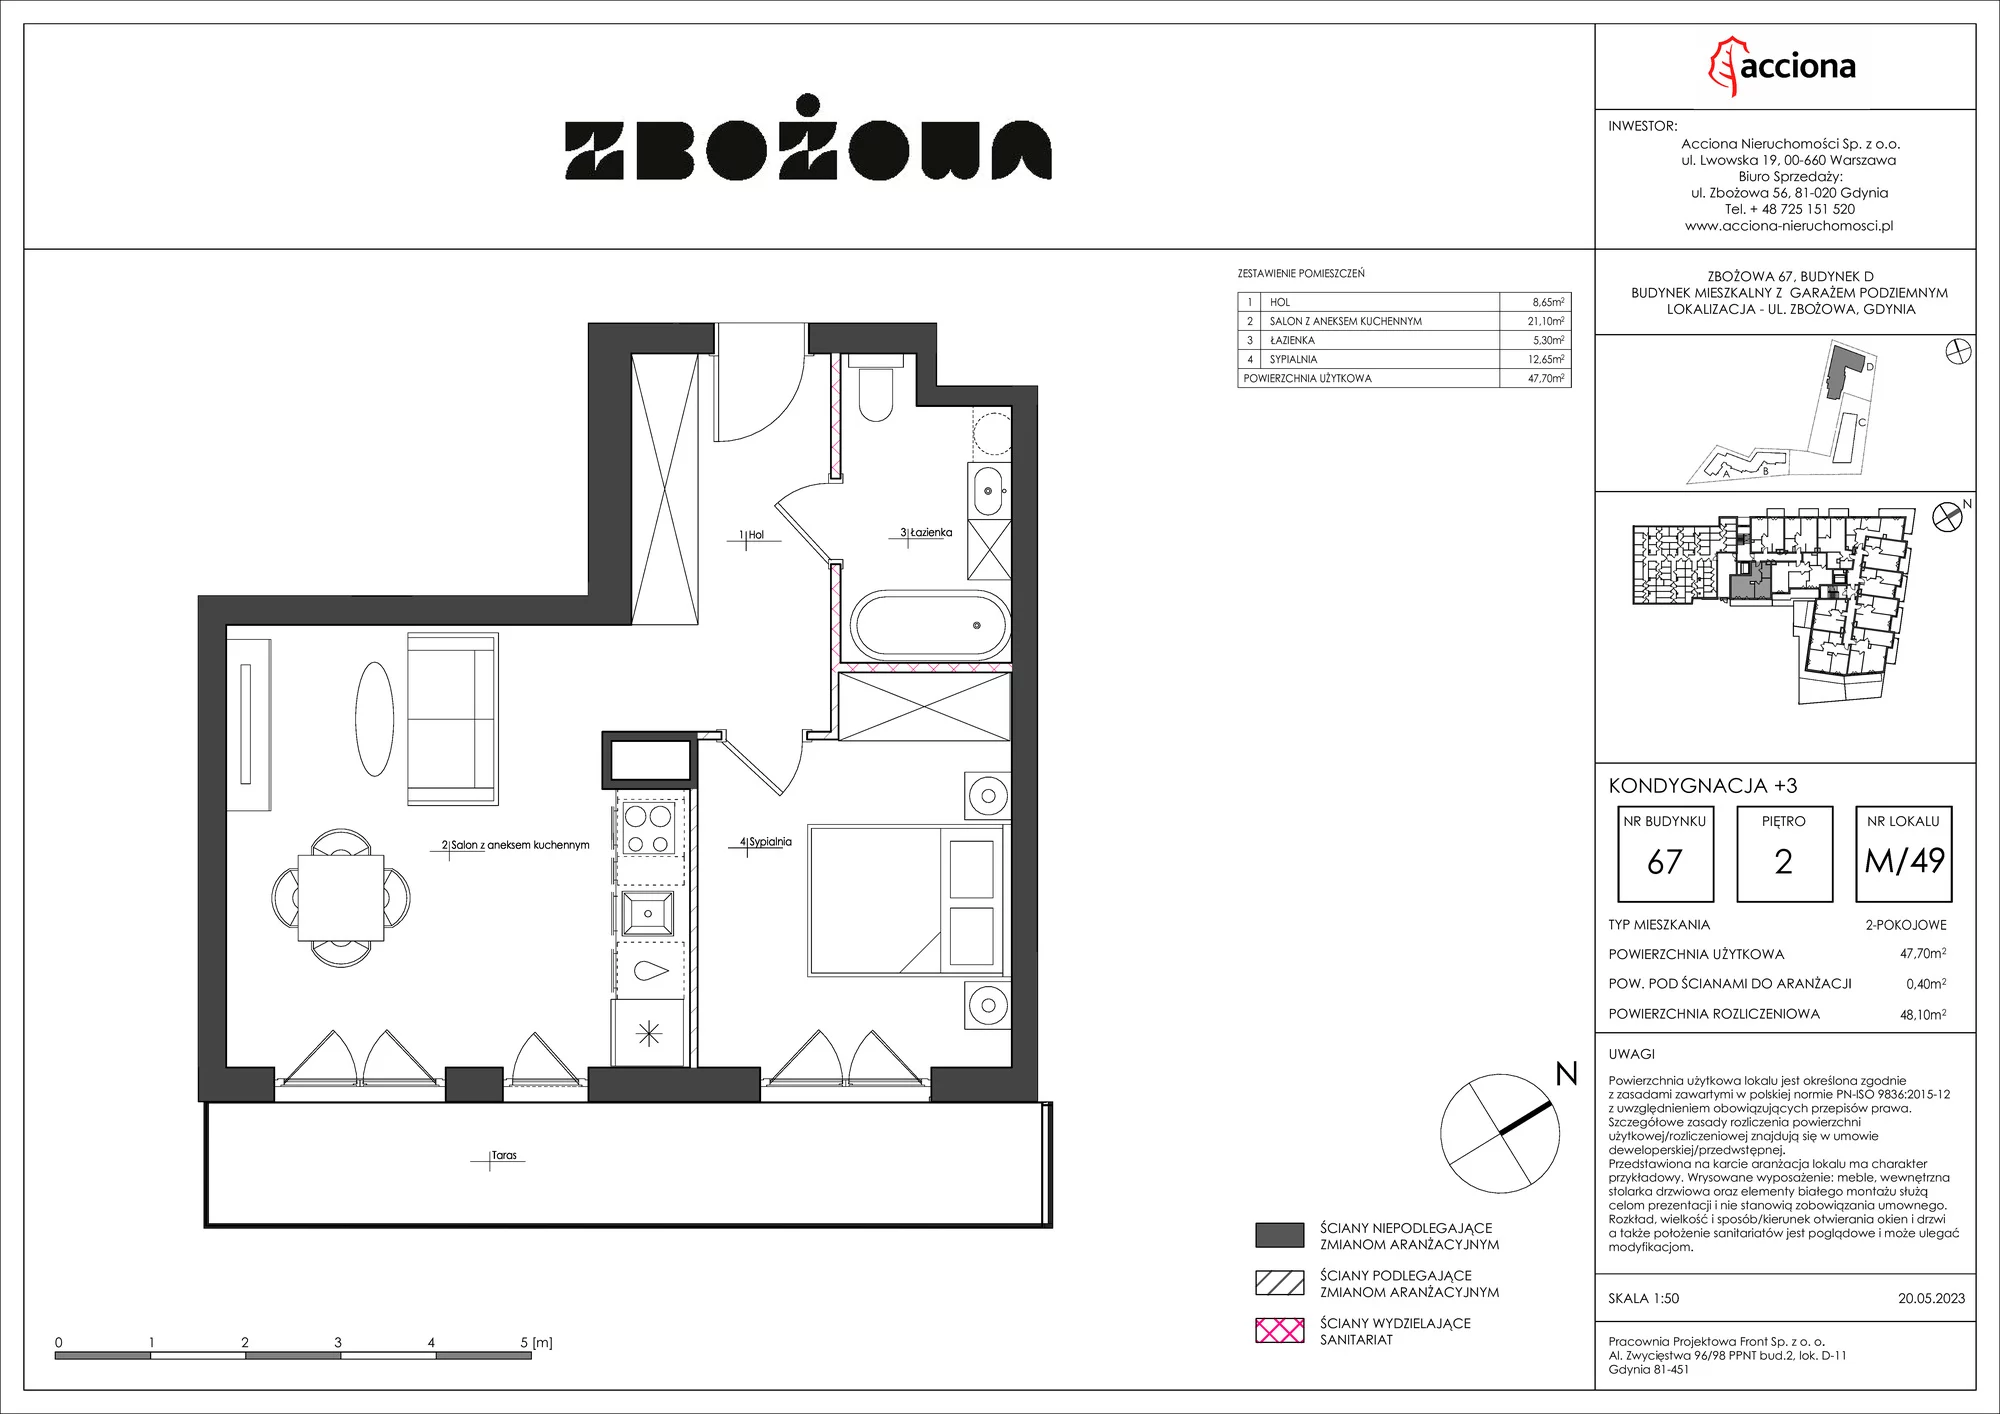 Mieszkanie 48,10 m², piętro 2, oferta nr 67.49, Zbożowa, Gdynia, Cisowa, ul. Zbożowa